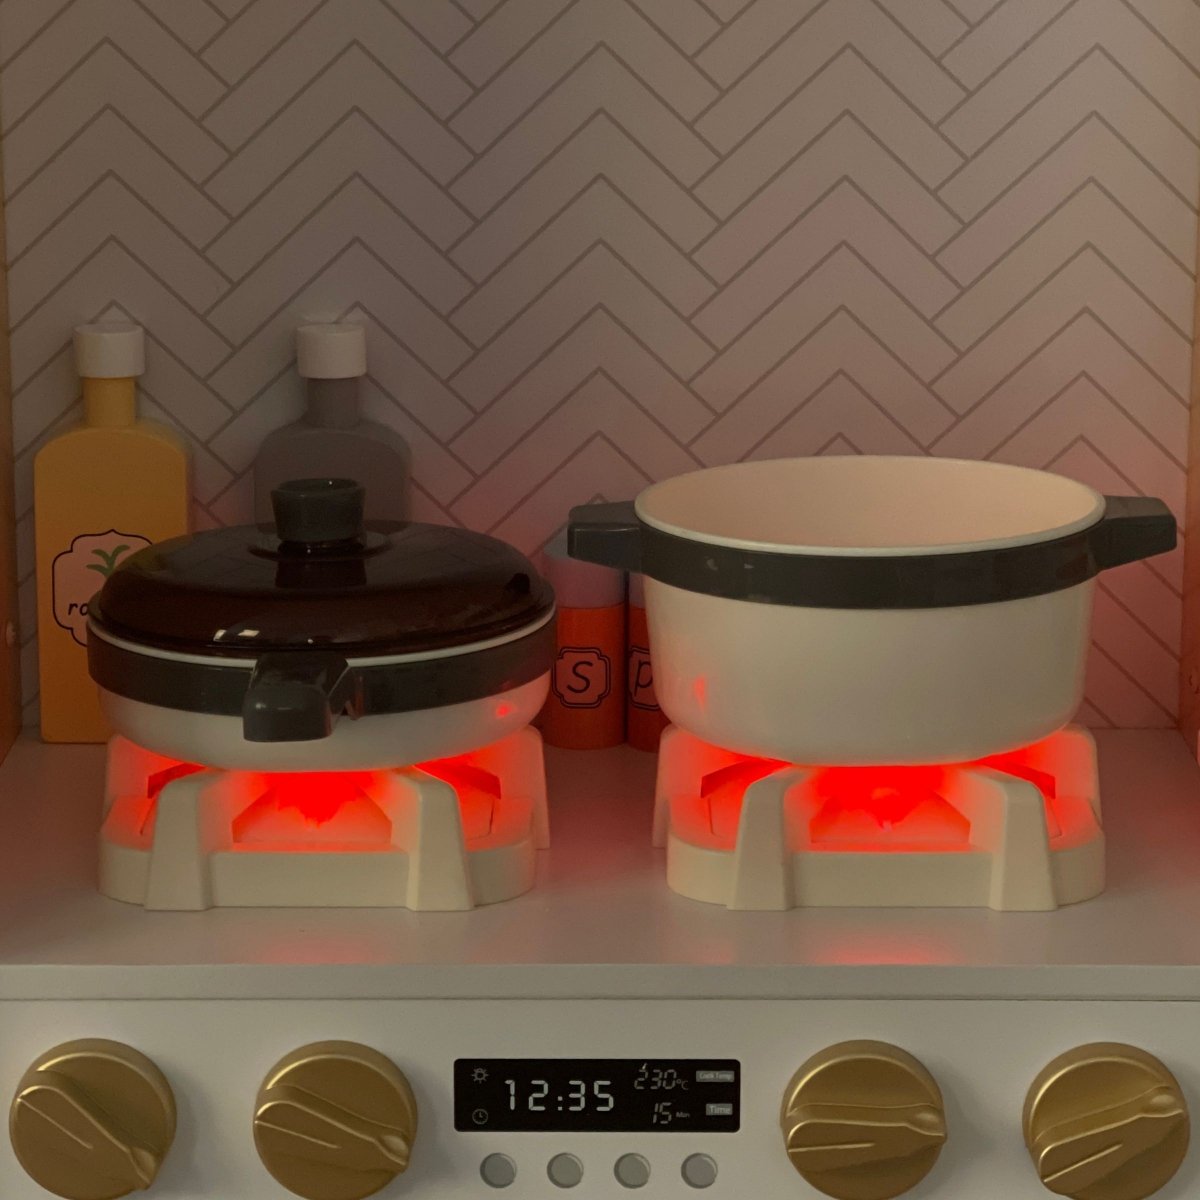 Duża, drewniana kuchnia interaktywna XXXL z oświetleniem LED, ekspresem do kawy oraz zestawem warzyw i owoców - 50 elementów